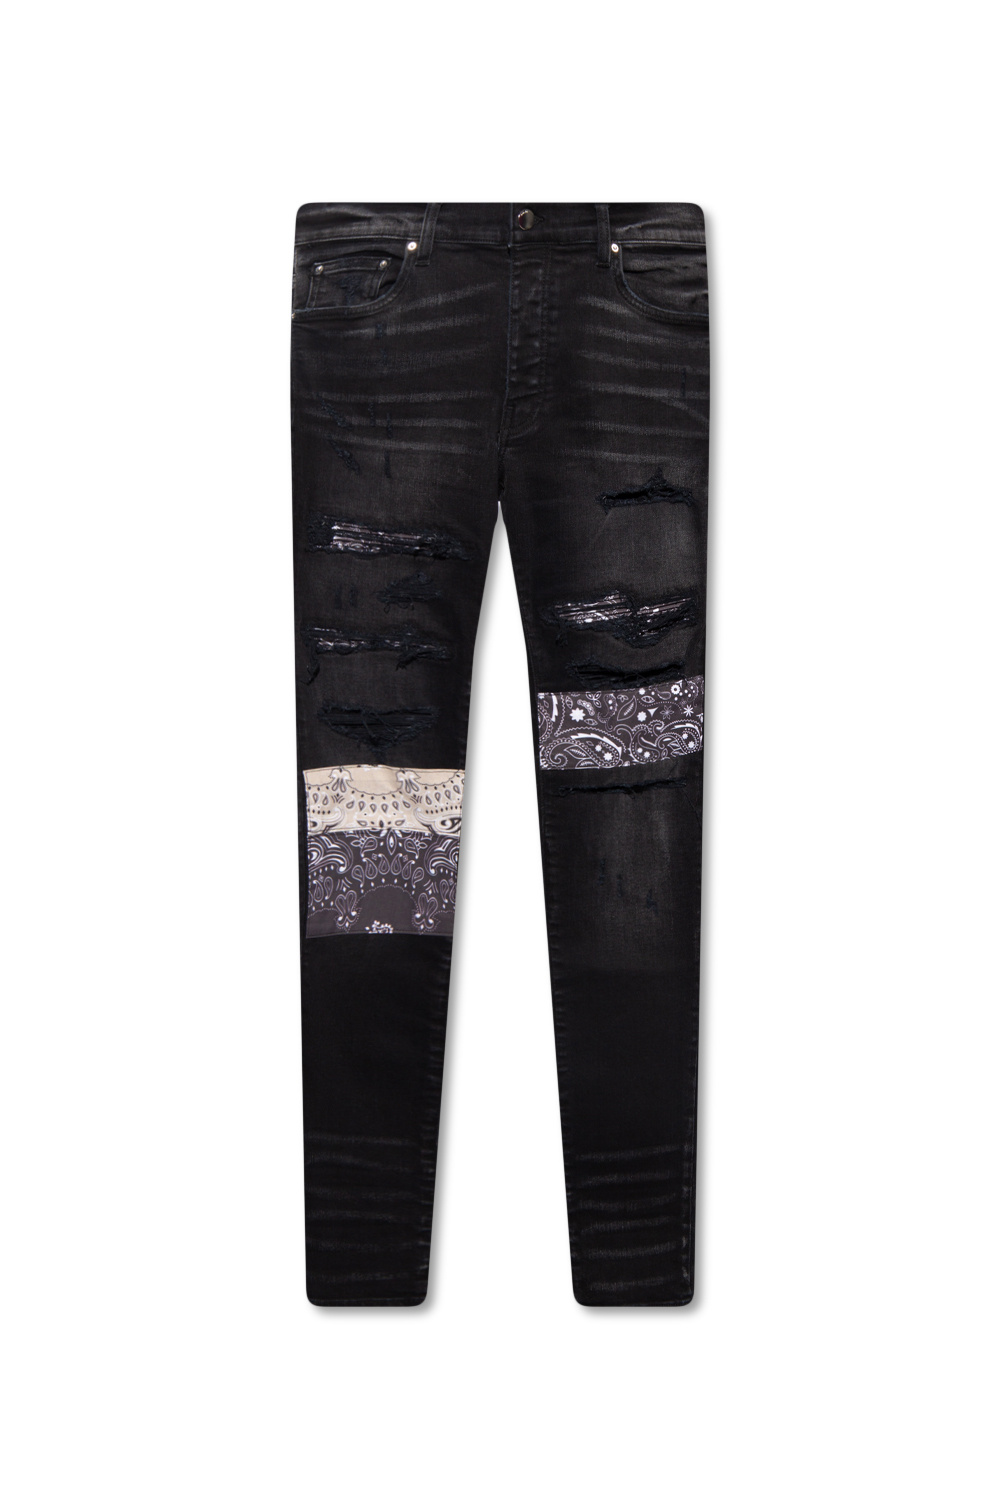 Shorts ET Bermudas st10181 o47306 noir - Black Distressed skinny jeans Amiri  - SchaferandweinerShops GB